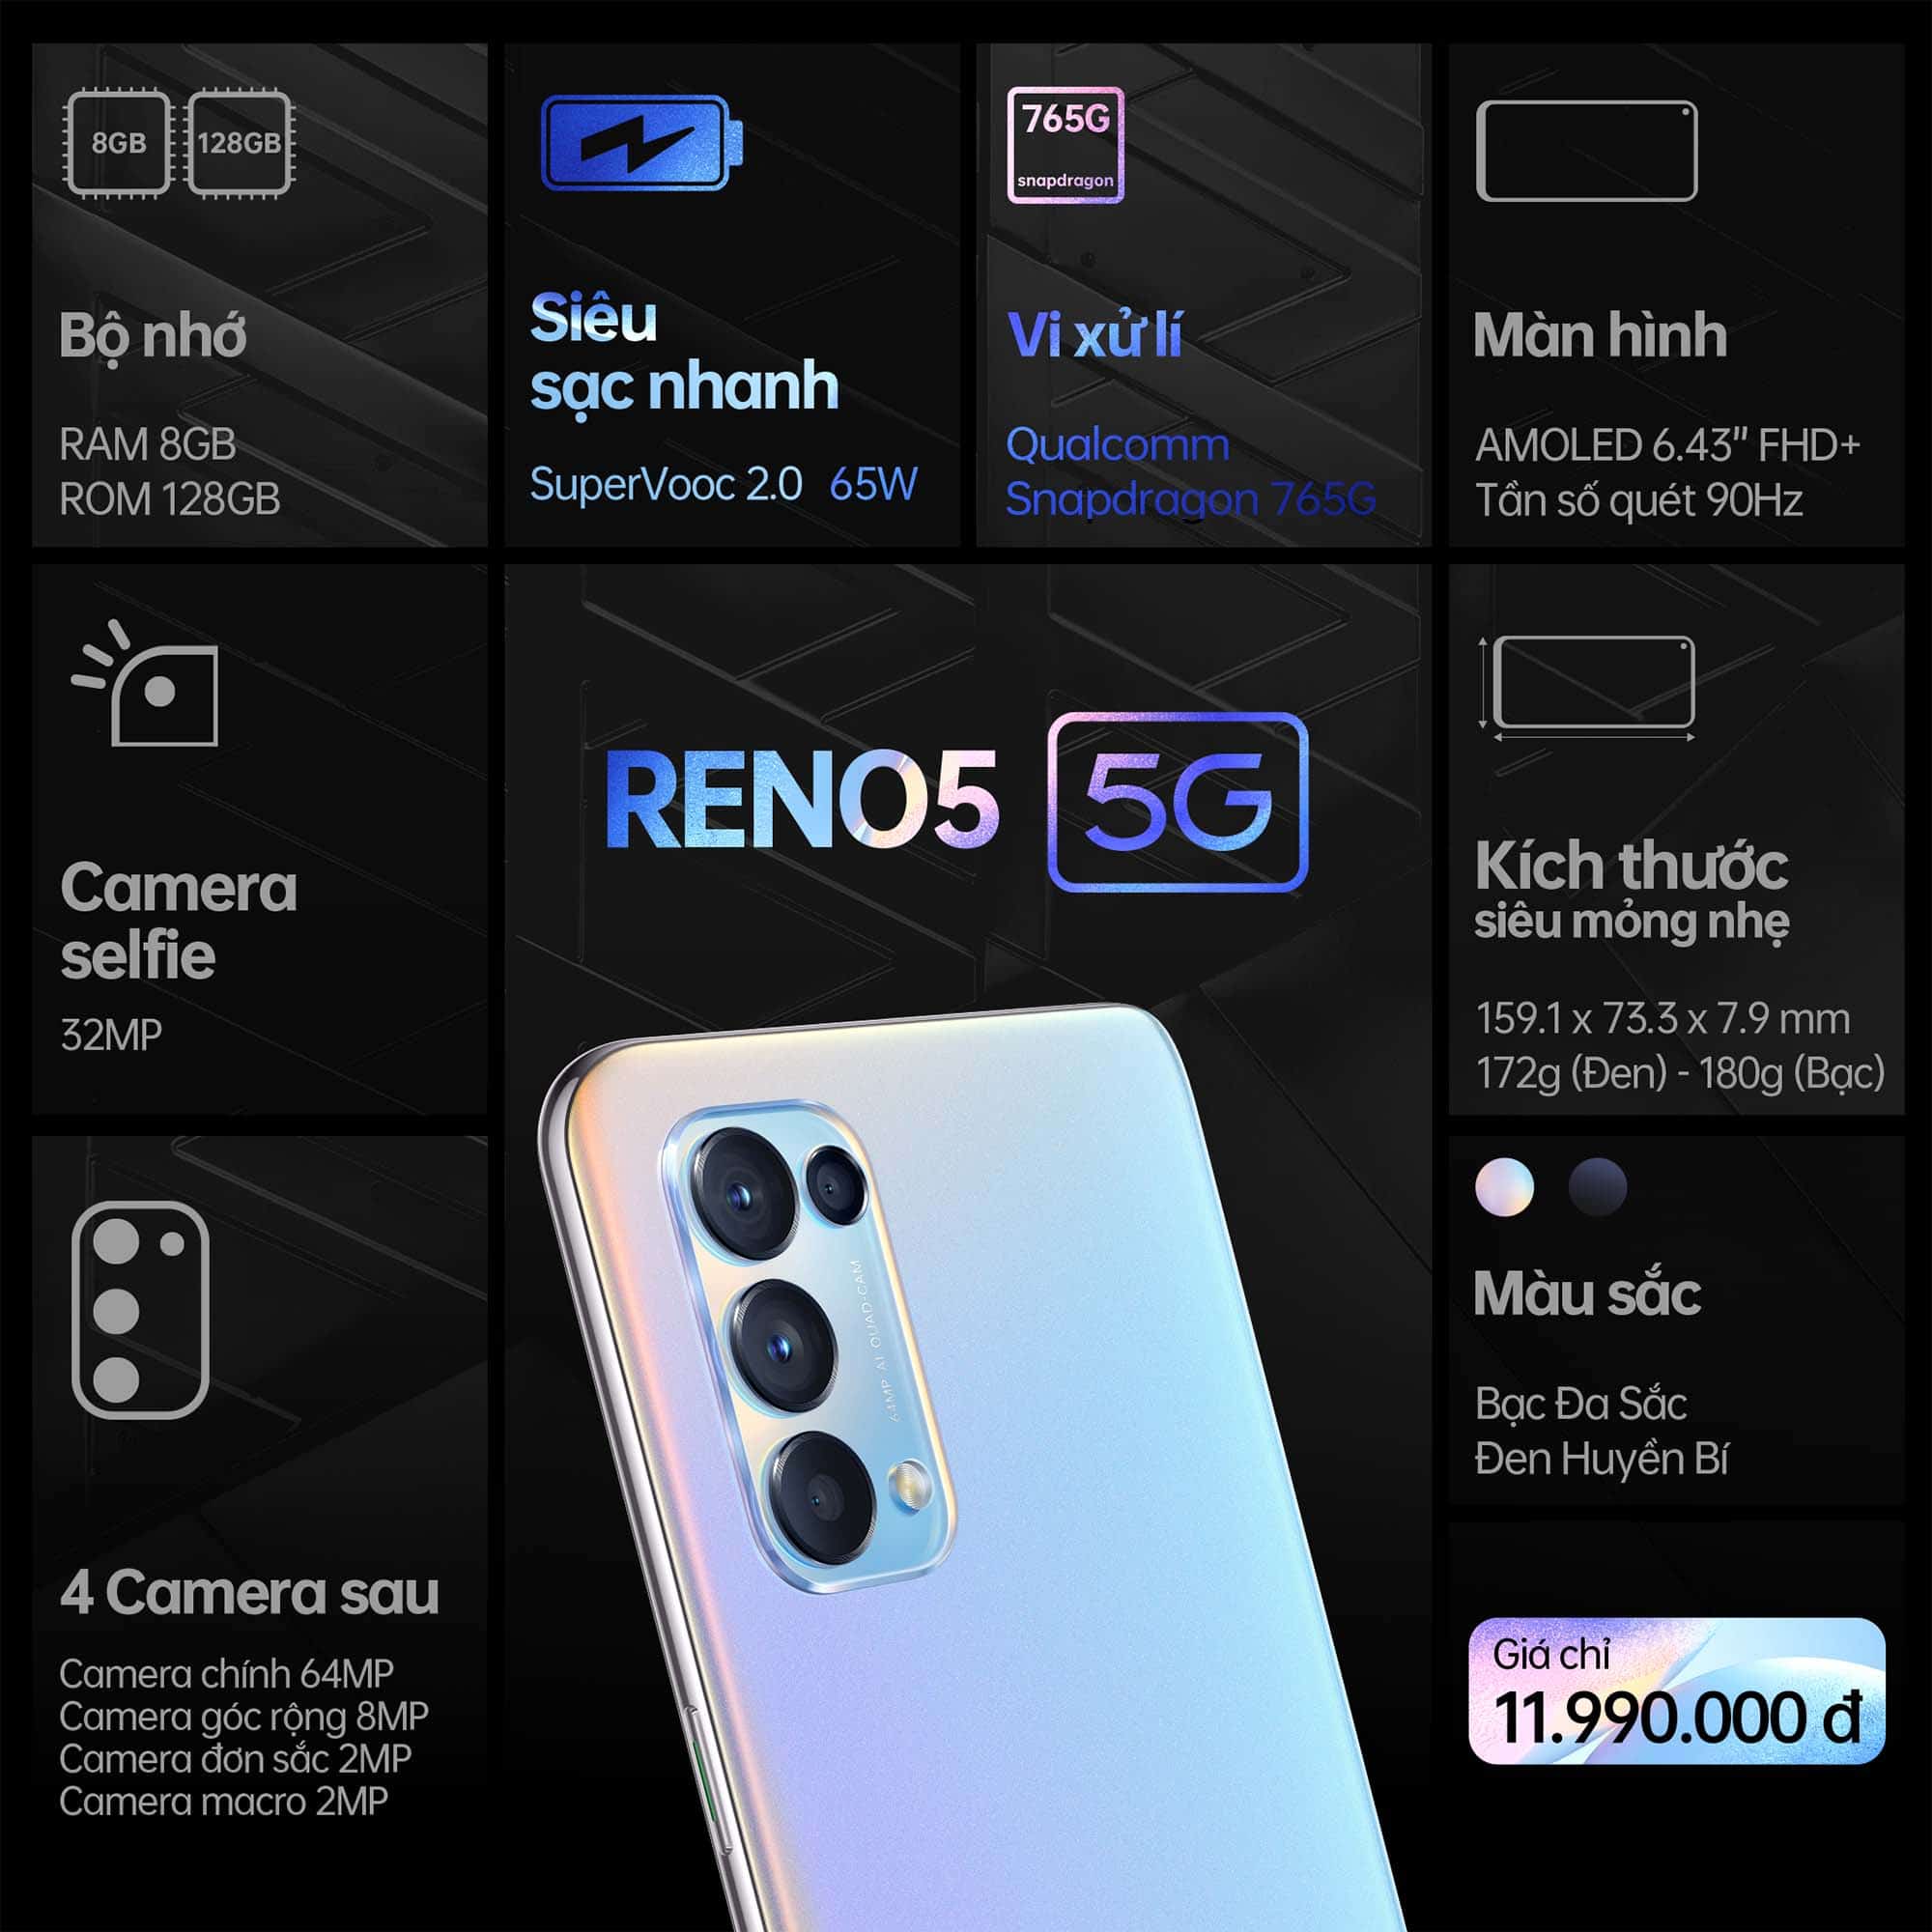 OPPO Reno5 5G chính thức ra mắt tại thị trường Việt Nam giá 11,990,000 VNĐ